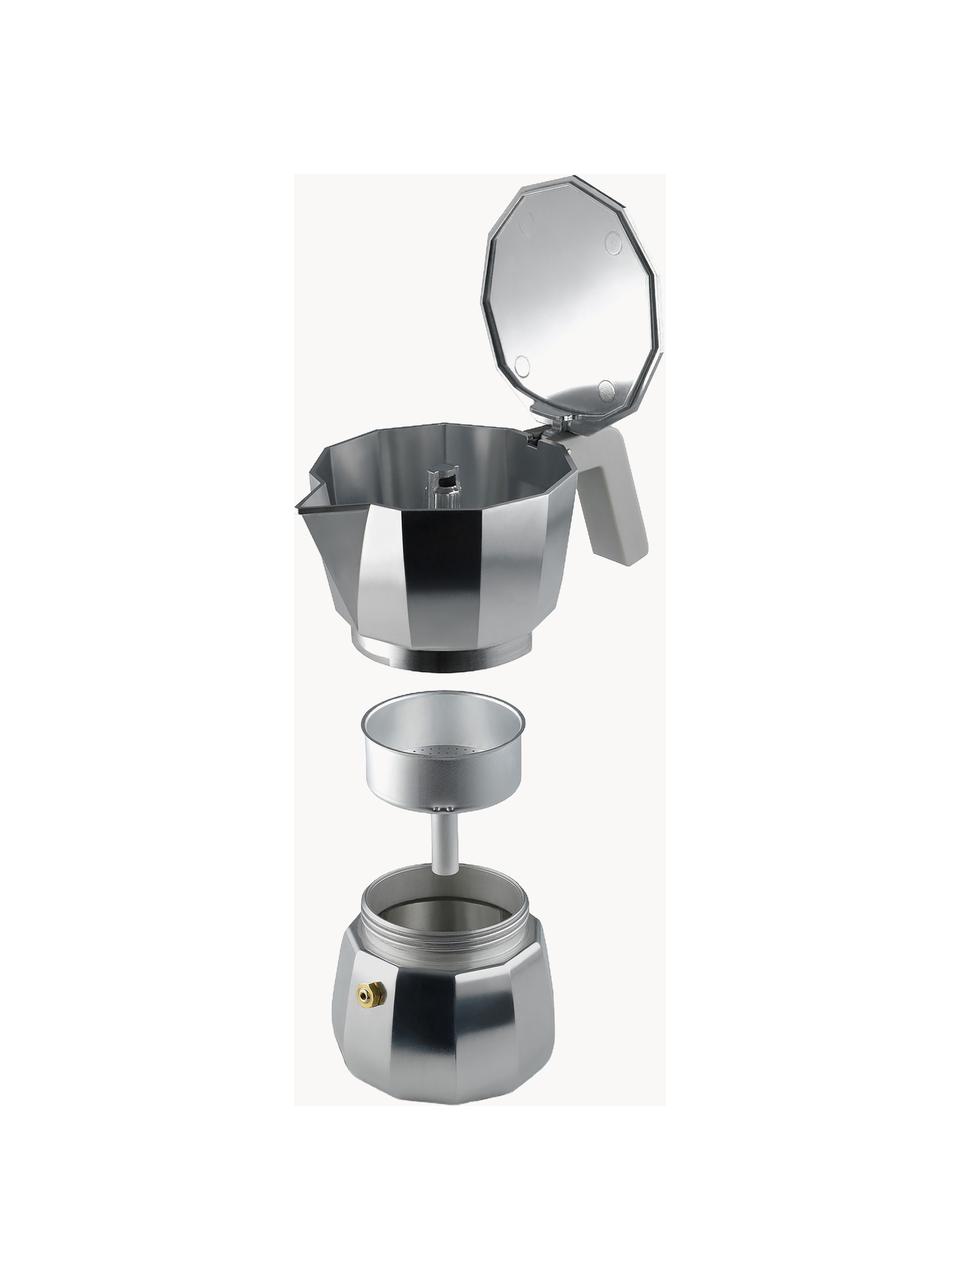 Espressokocher Moka, verschiedene Größen, Aluminium, Kunststoff, Silberfarben, Grau, B 14 x H 11 cm, für eine Tasse